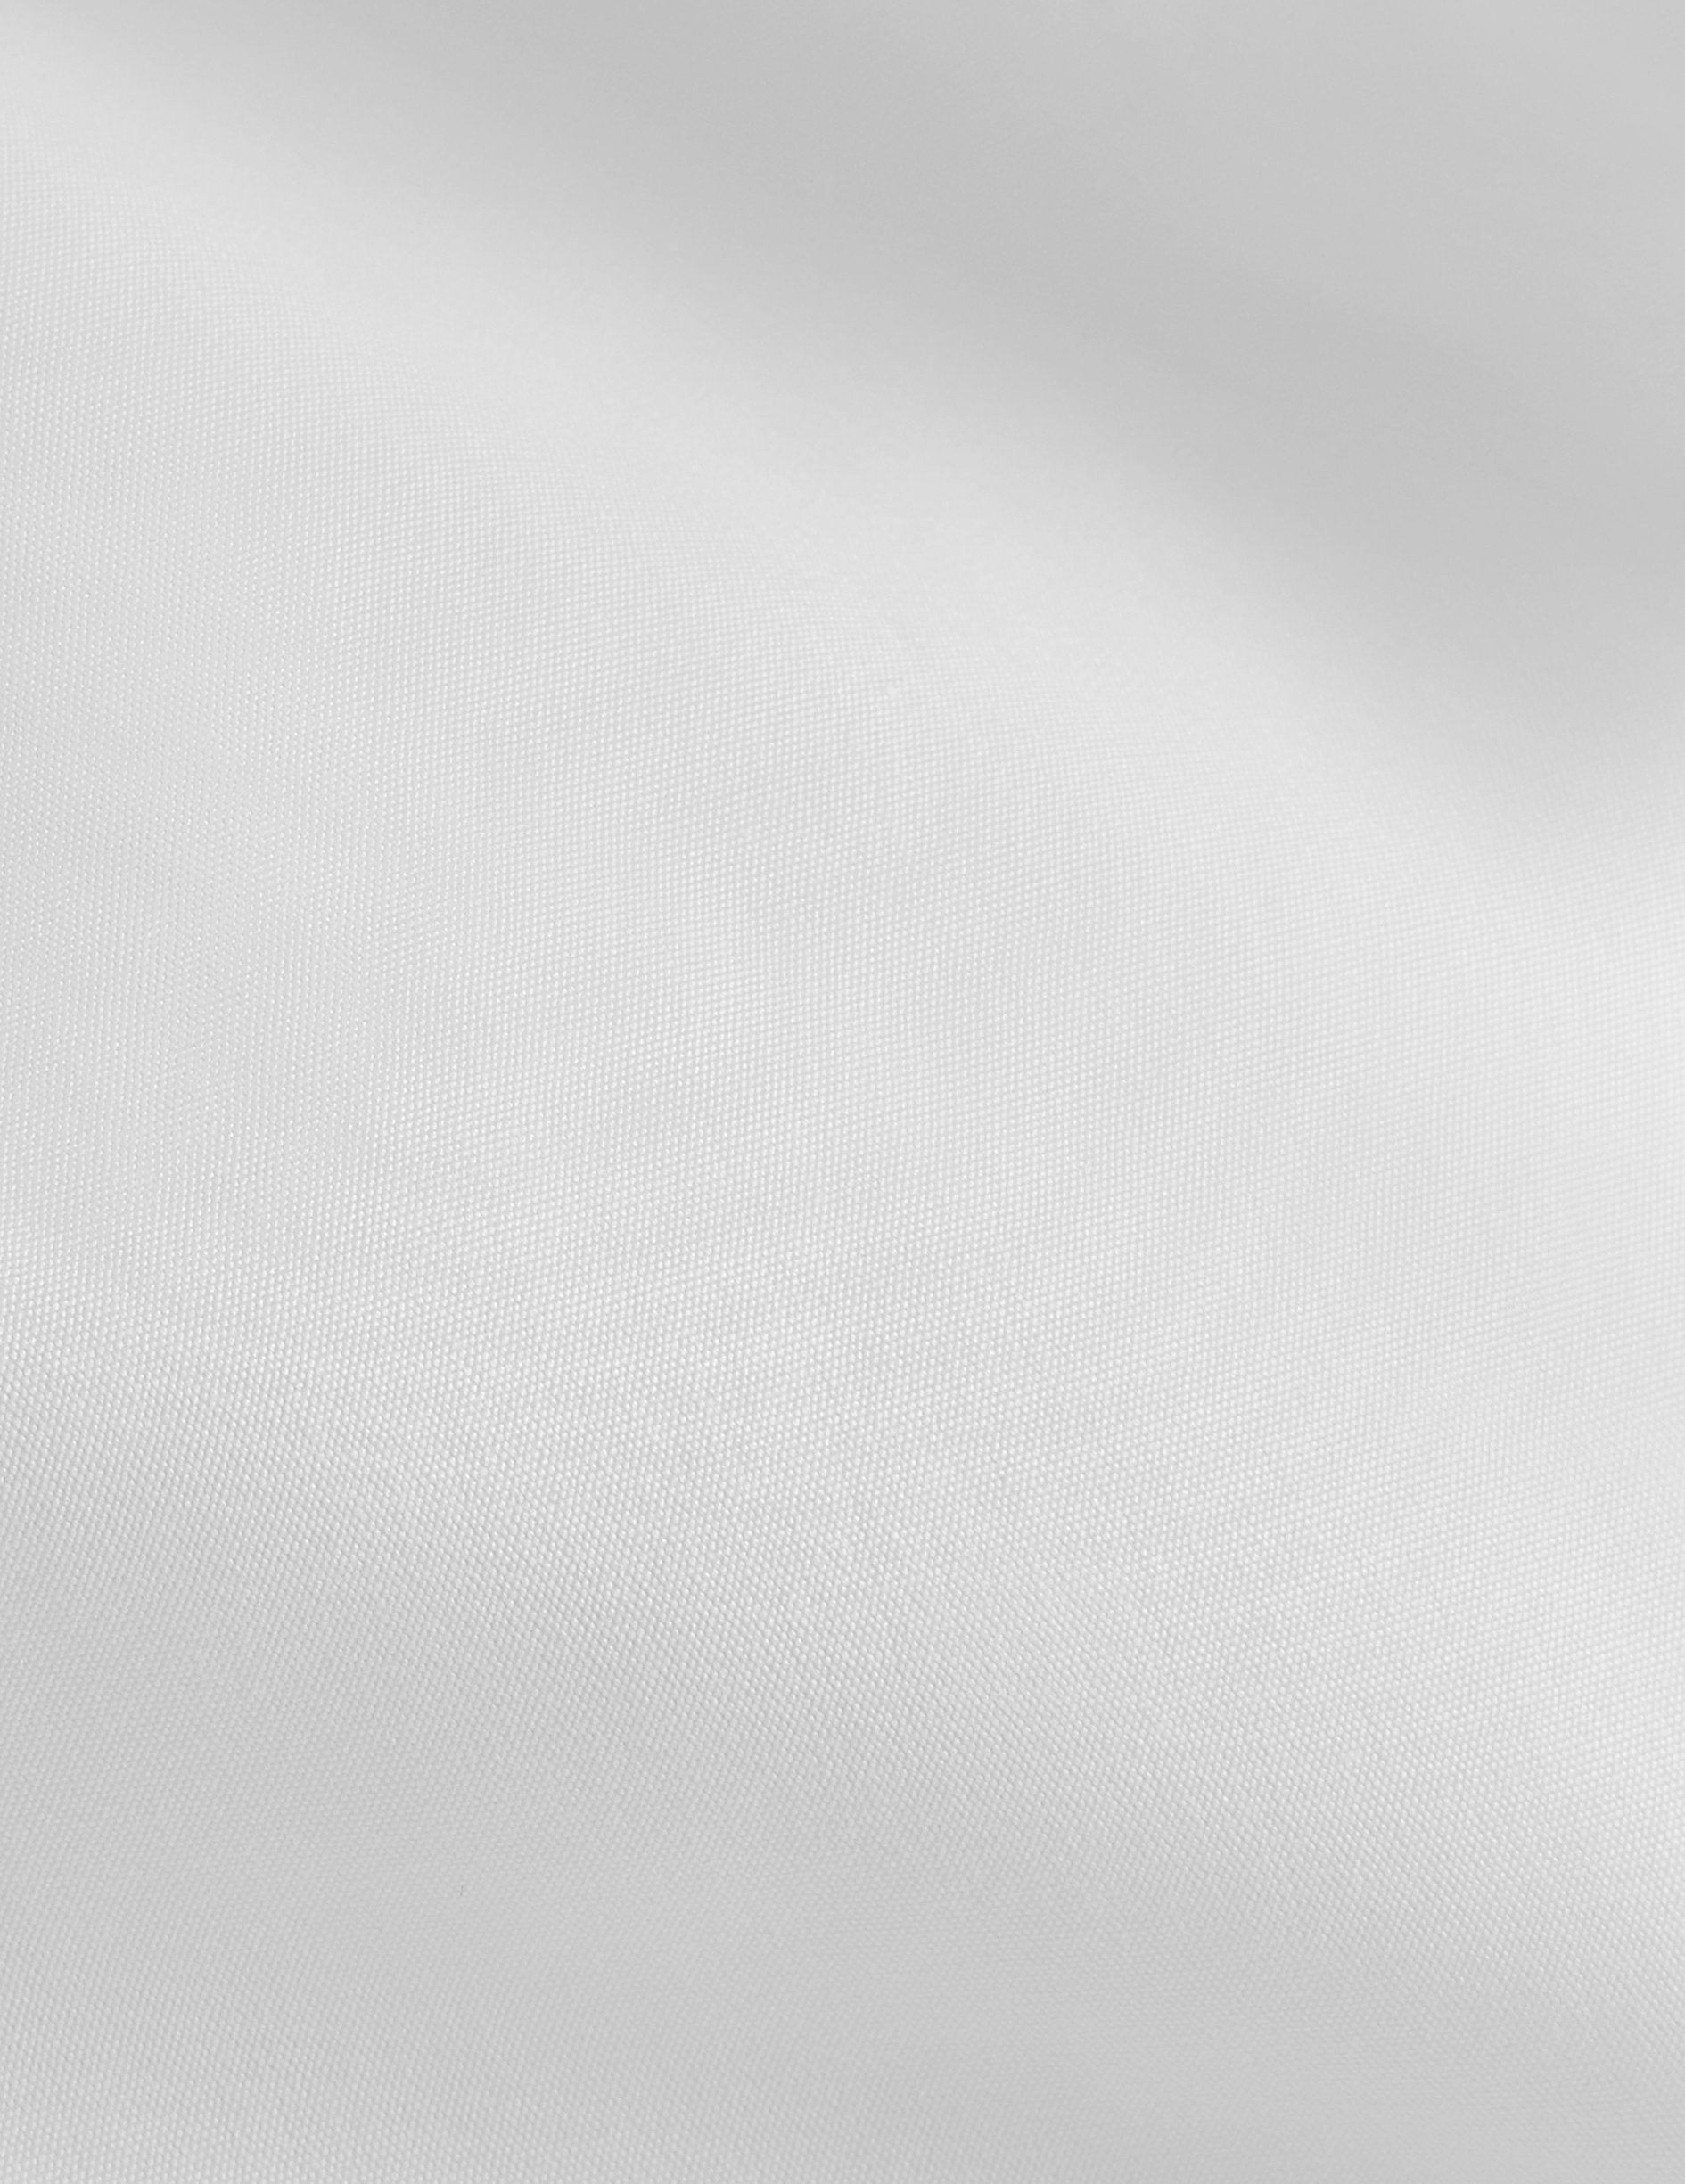 Chemise Semi-ajustée blanche - Popeline - Col Droit